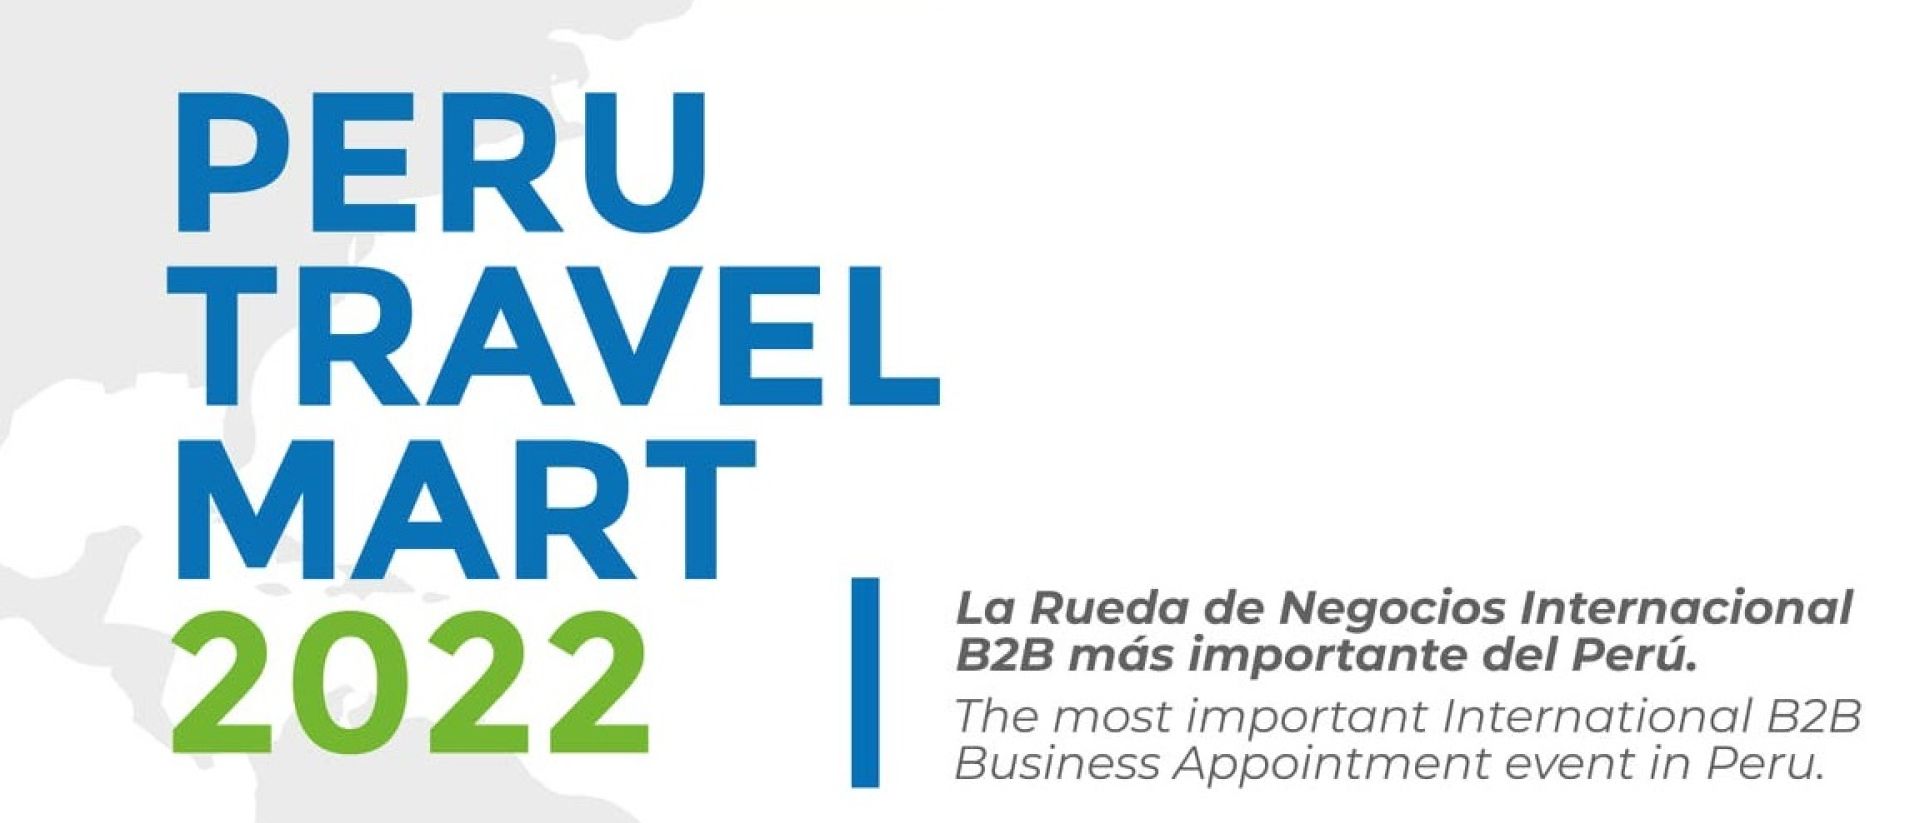 La Perú Travel Mart 2022, en Lima | Expreso